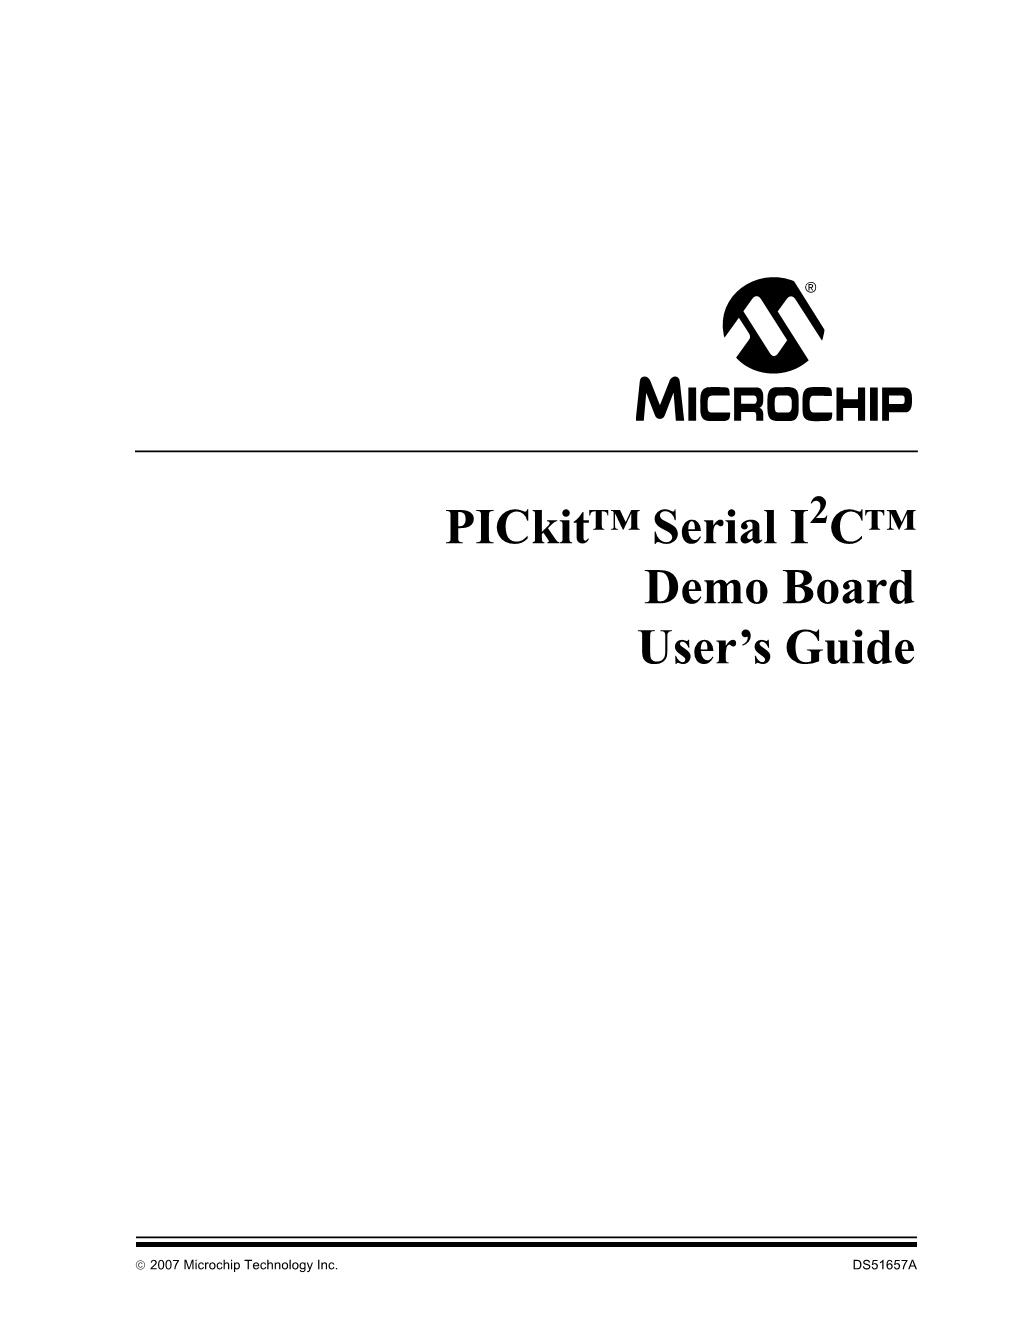 Pickit Serial I2C Demo Board User's Guide